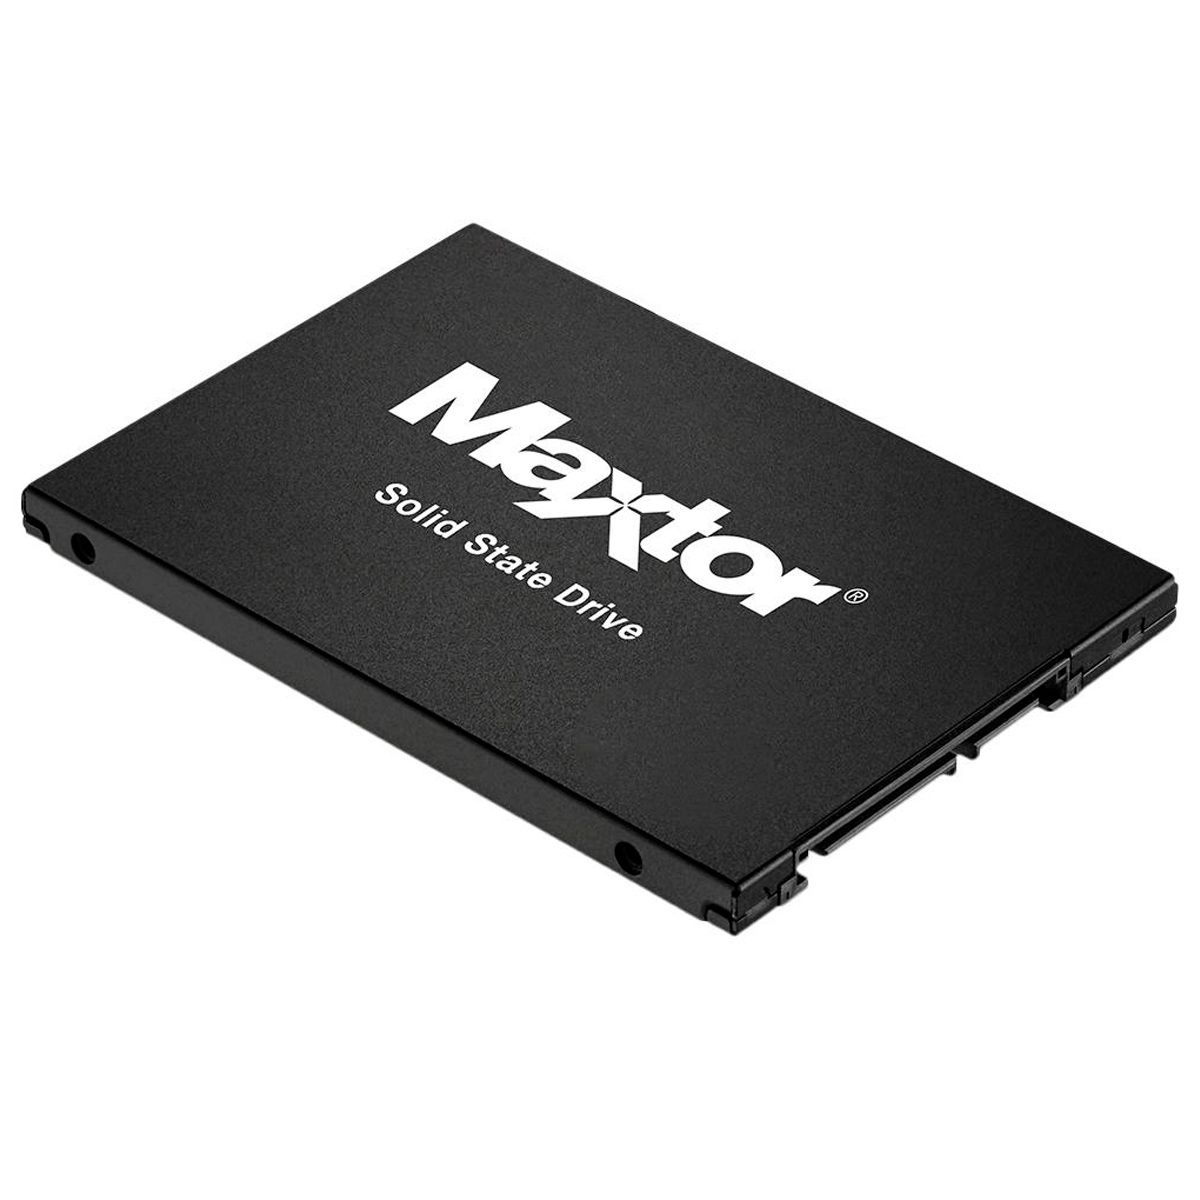 SSD 240GB Seagate Maxtor - SATA - Leitura 540 MB/s - Gravação 425 MB/s - YA240VC1A001